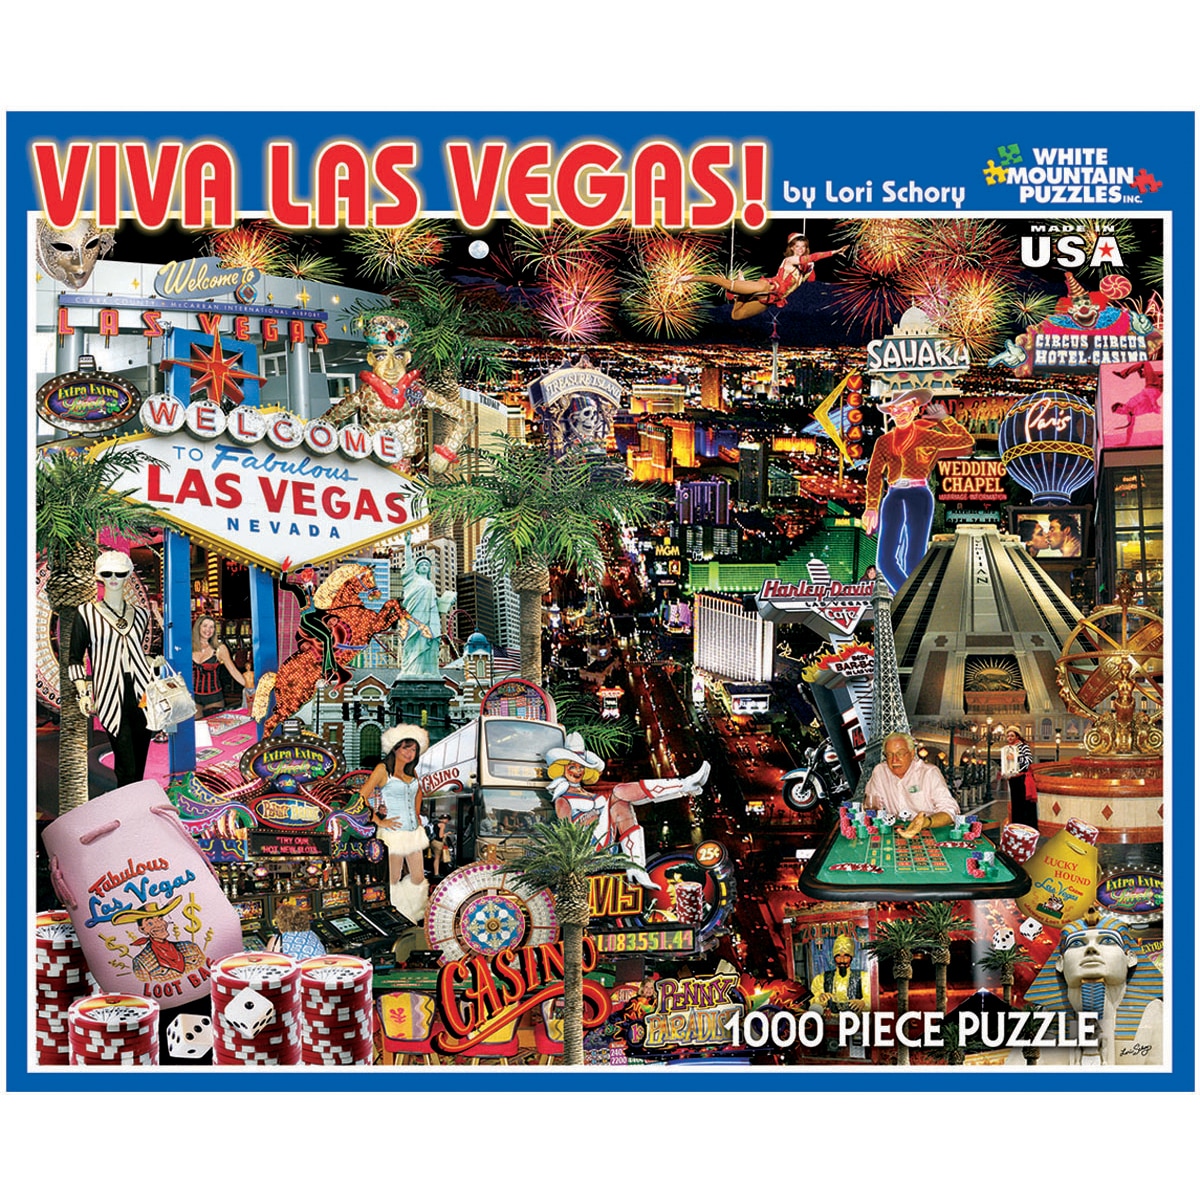 Viva Las Vegas 1000 piece Jigsaw Puzzle Today $16.99